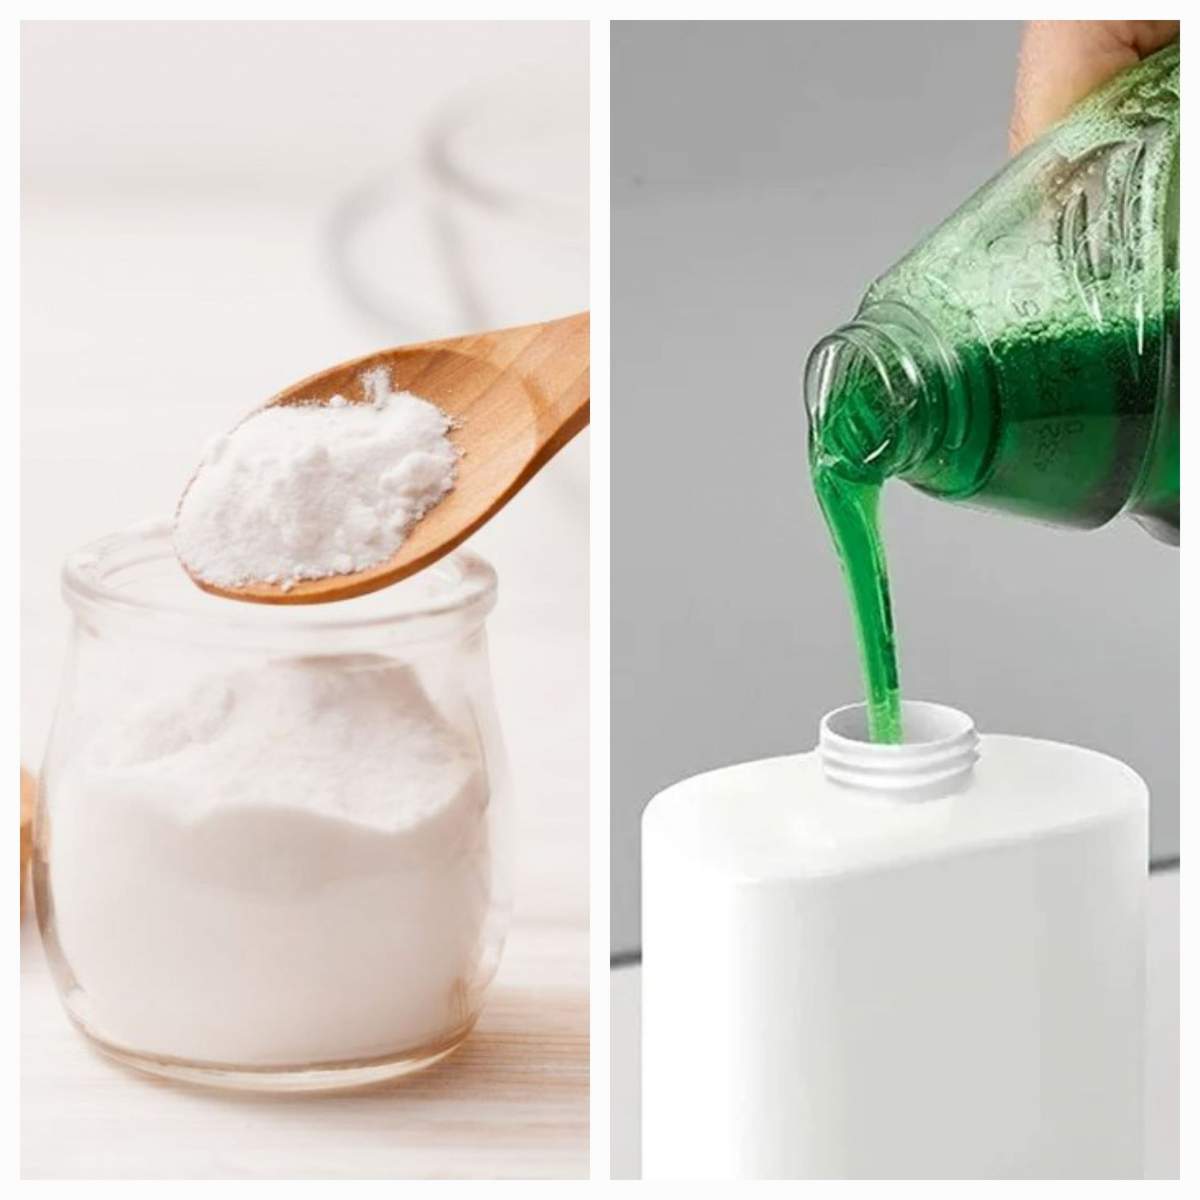 Ce se întâmplă dacă amesteci bicarbonat de sodiu cu detergent de vase. Trucul care te va ajuta în bucătărie